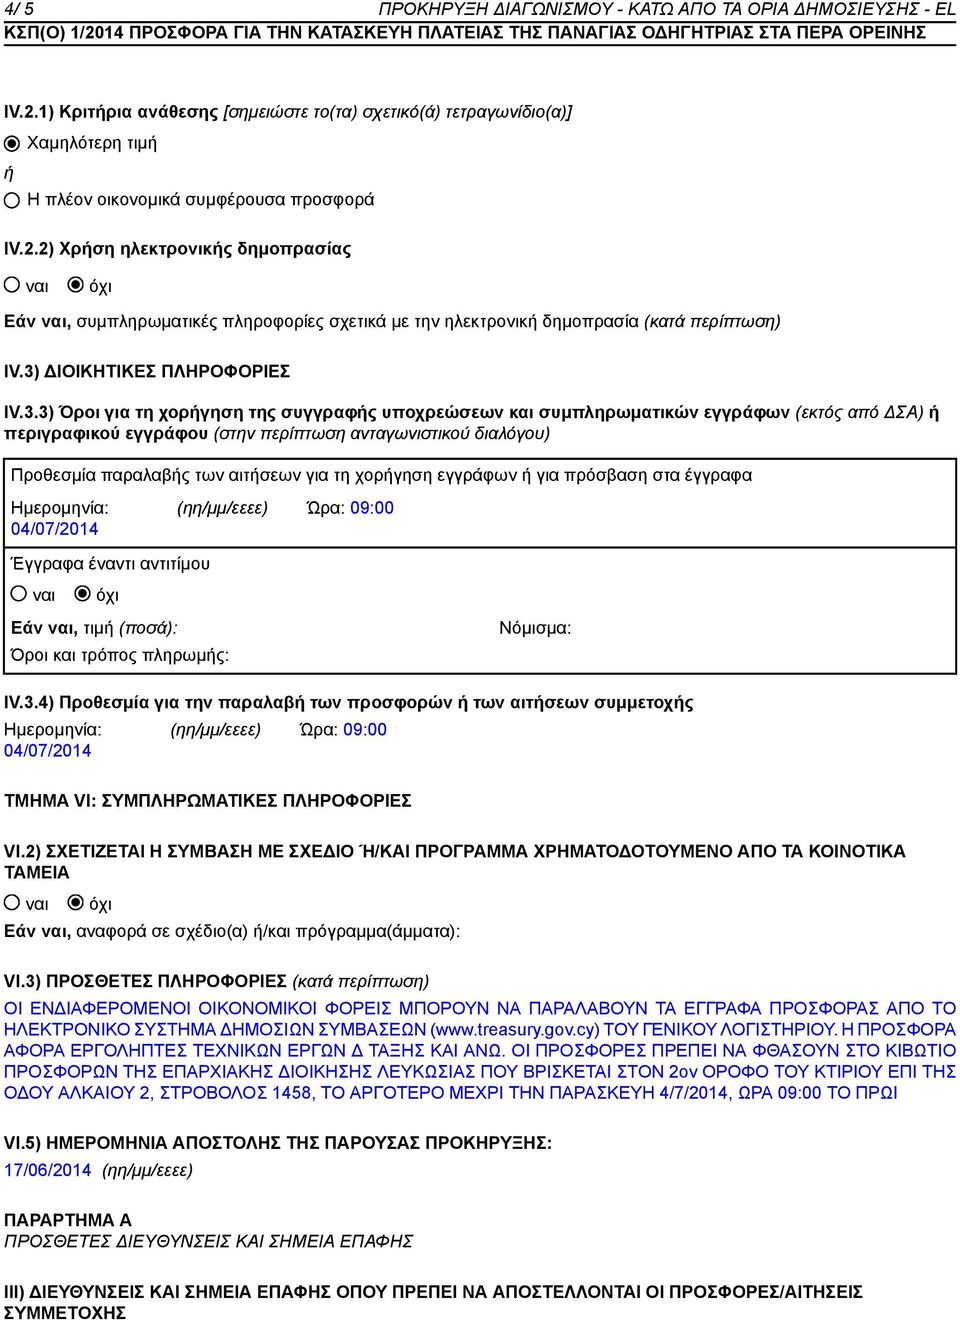 Προθεσμία παραλαβής των αιτήσεων για τη χορήγηση εγγράφων ή για πρόσβαση στα έγγραφα Ημερομηνία: 04/07/2014 (ηη/μμ/εεεε) Ώρα: 09:00 Έγγραφα έναντι αντιτίμου Εάν, τιμή (ποσά): Όροι και τρόπος